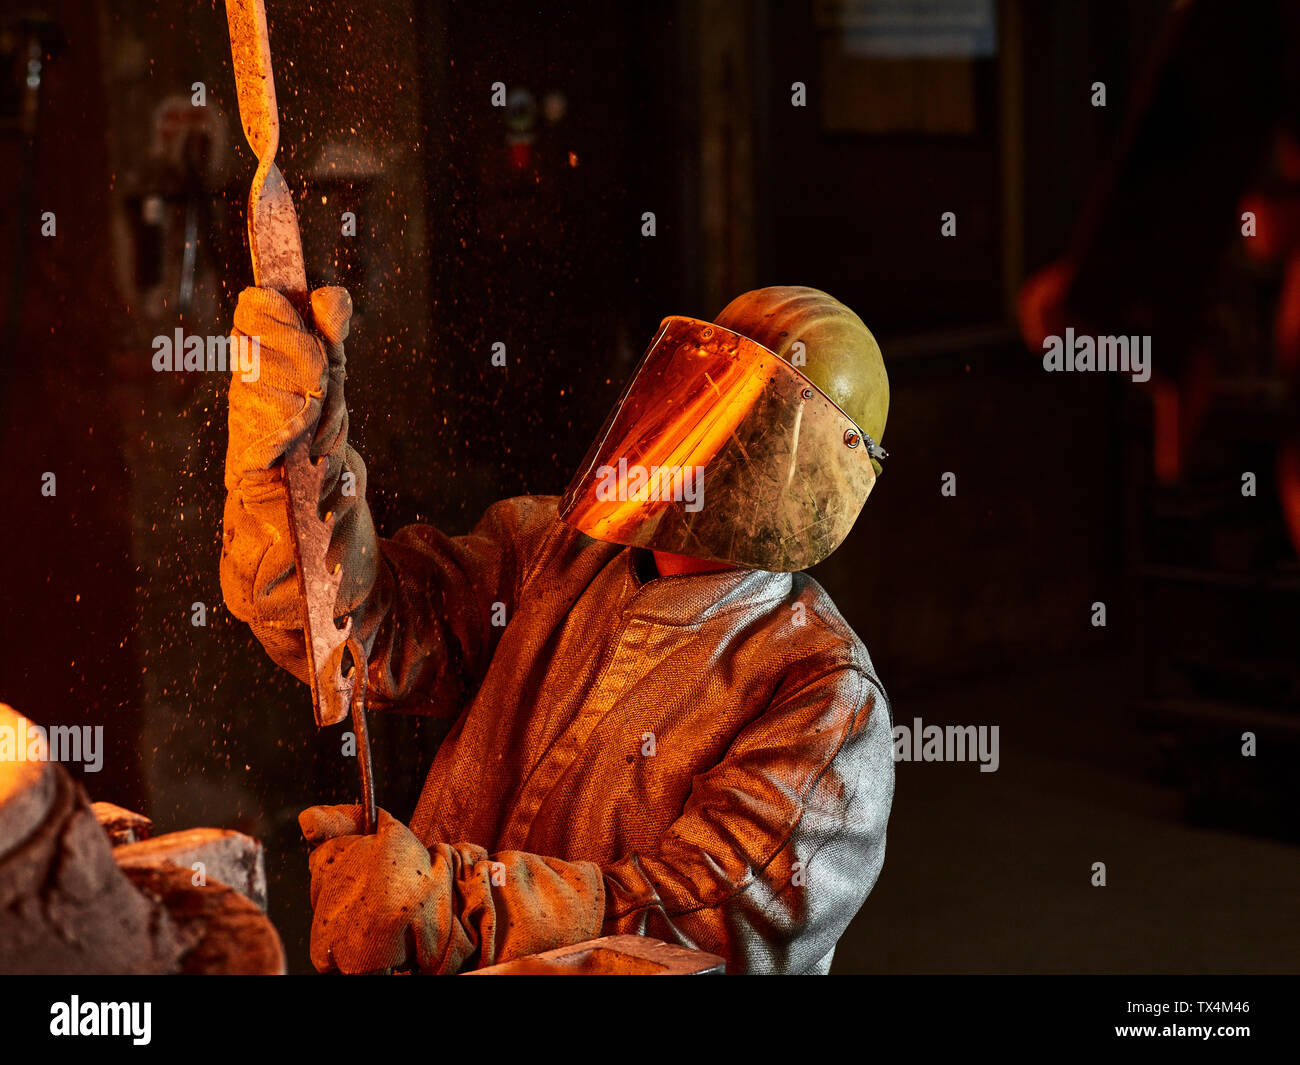 Industria, lavoratore in forno durante la fusione del rame, indossando un incendio tuta di prossimità Foto Stock